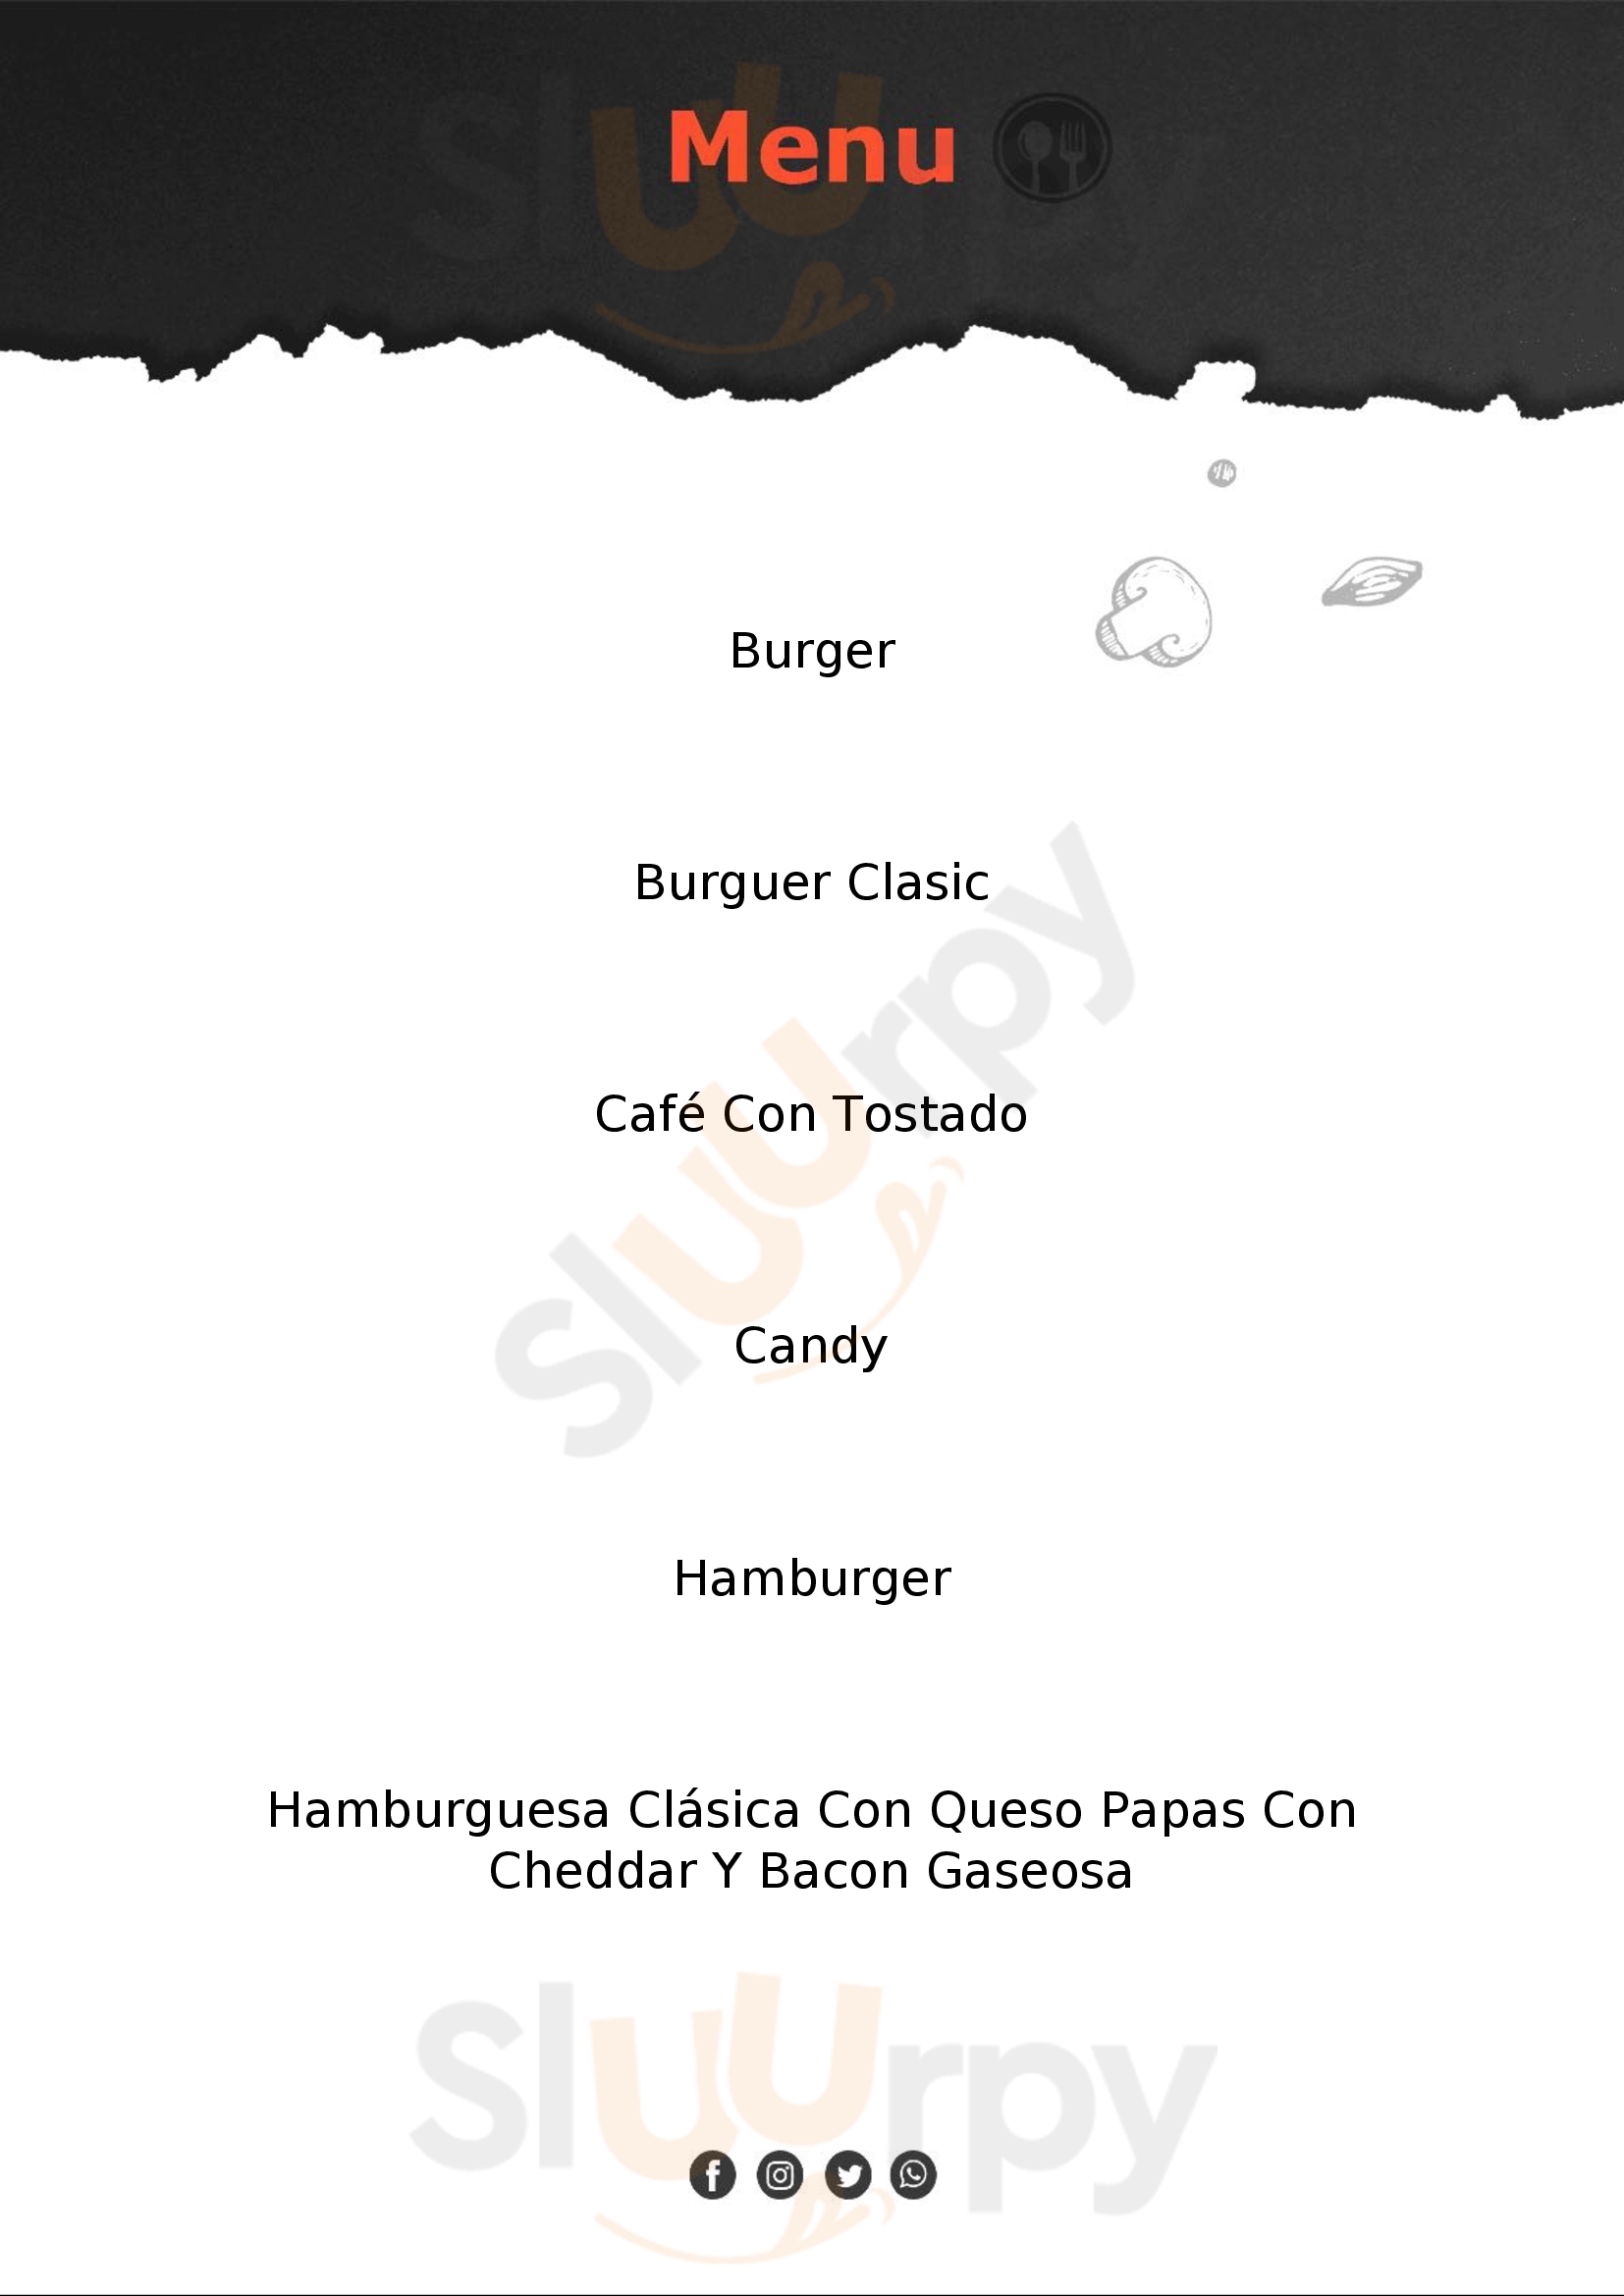 Burger King Rosario Menu - 1